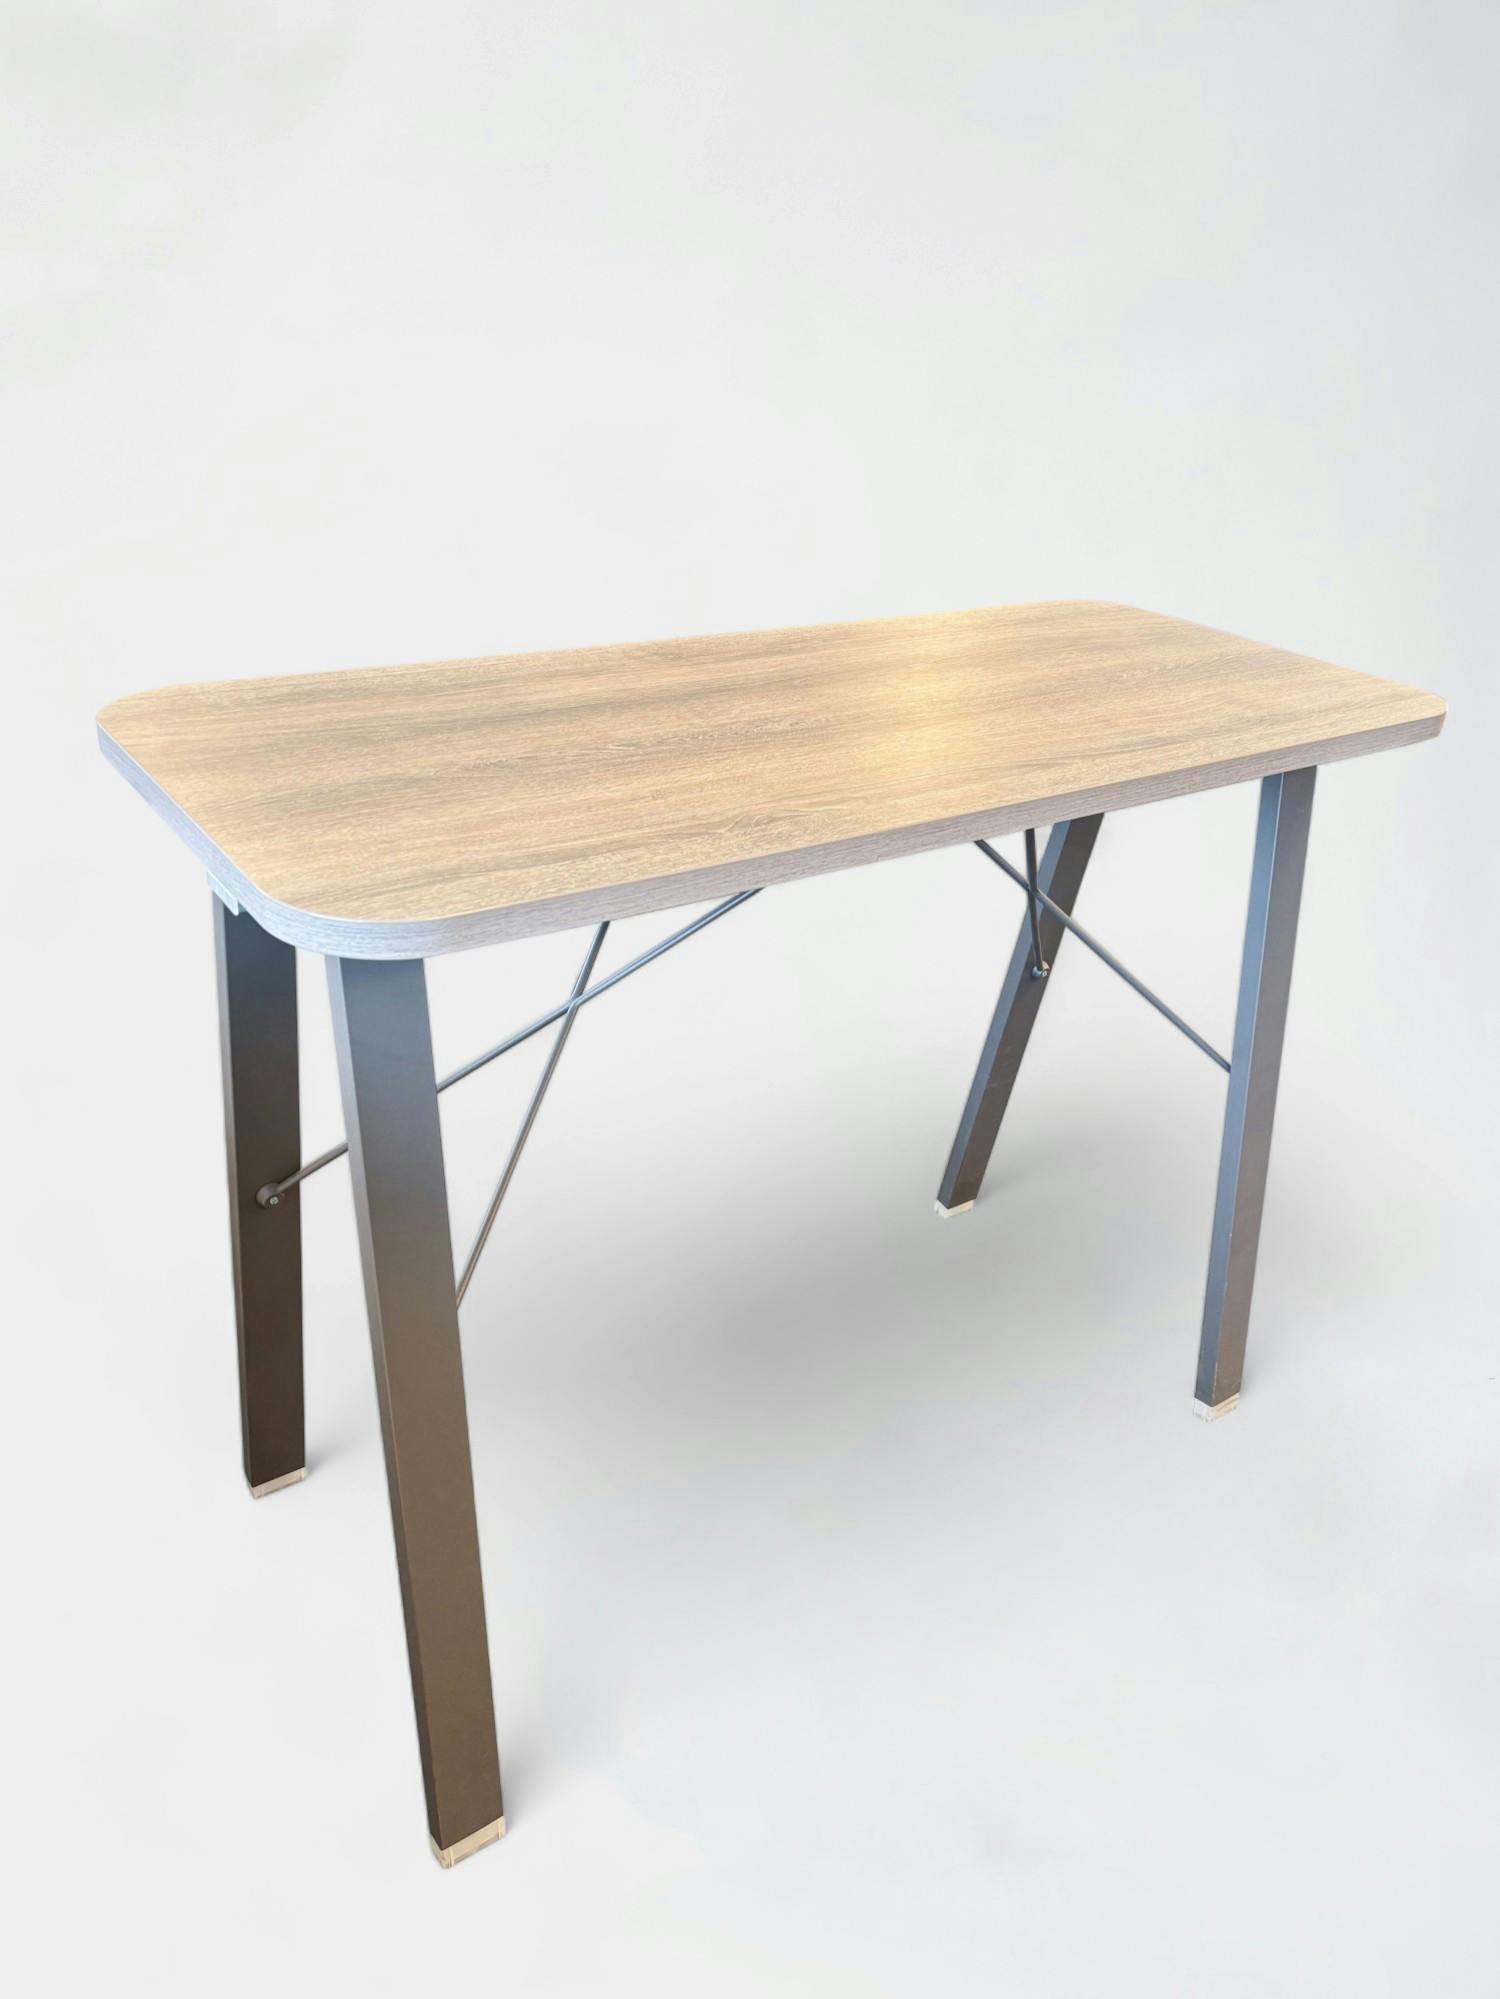 Licht houtnerf houten verstelbaar staand bureau met slanke metalen poten - Relieve Furniture